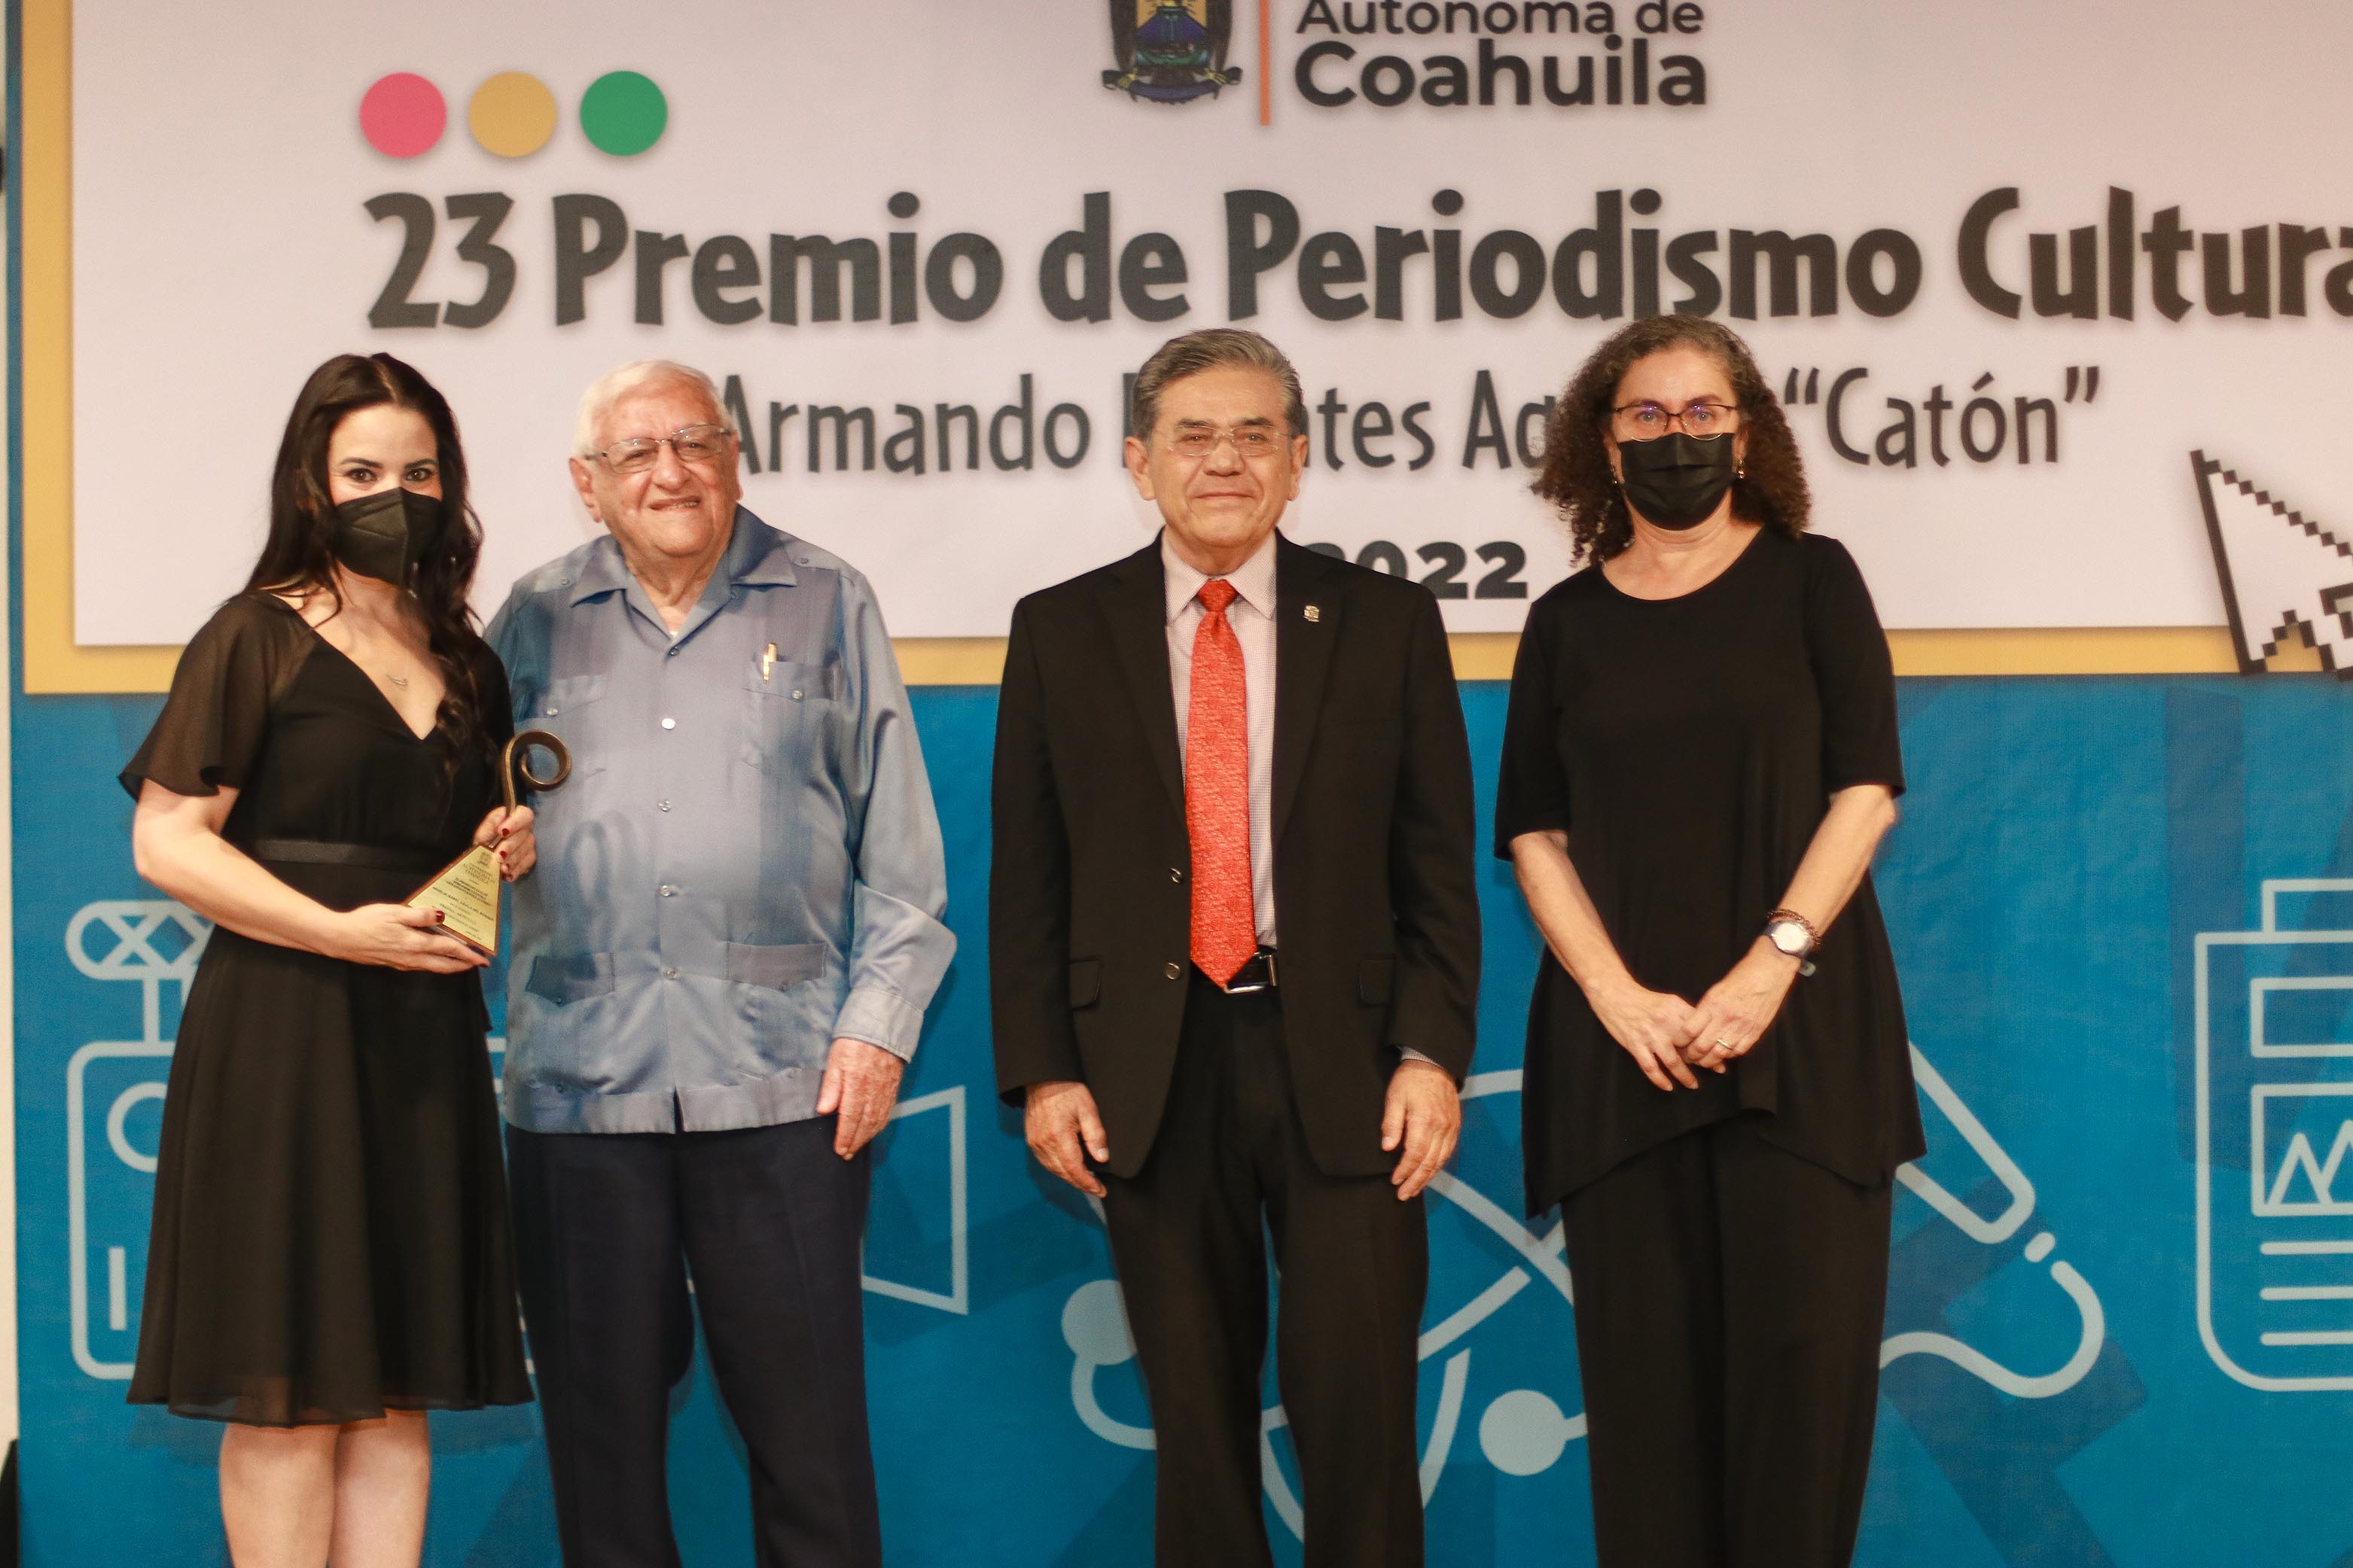 Reconoce UAdeC la Labor de Periodistas con la Edición XXIII del Premio de Periodismo Cultural Armando Fuentes Aguirre “Catón”